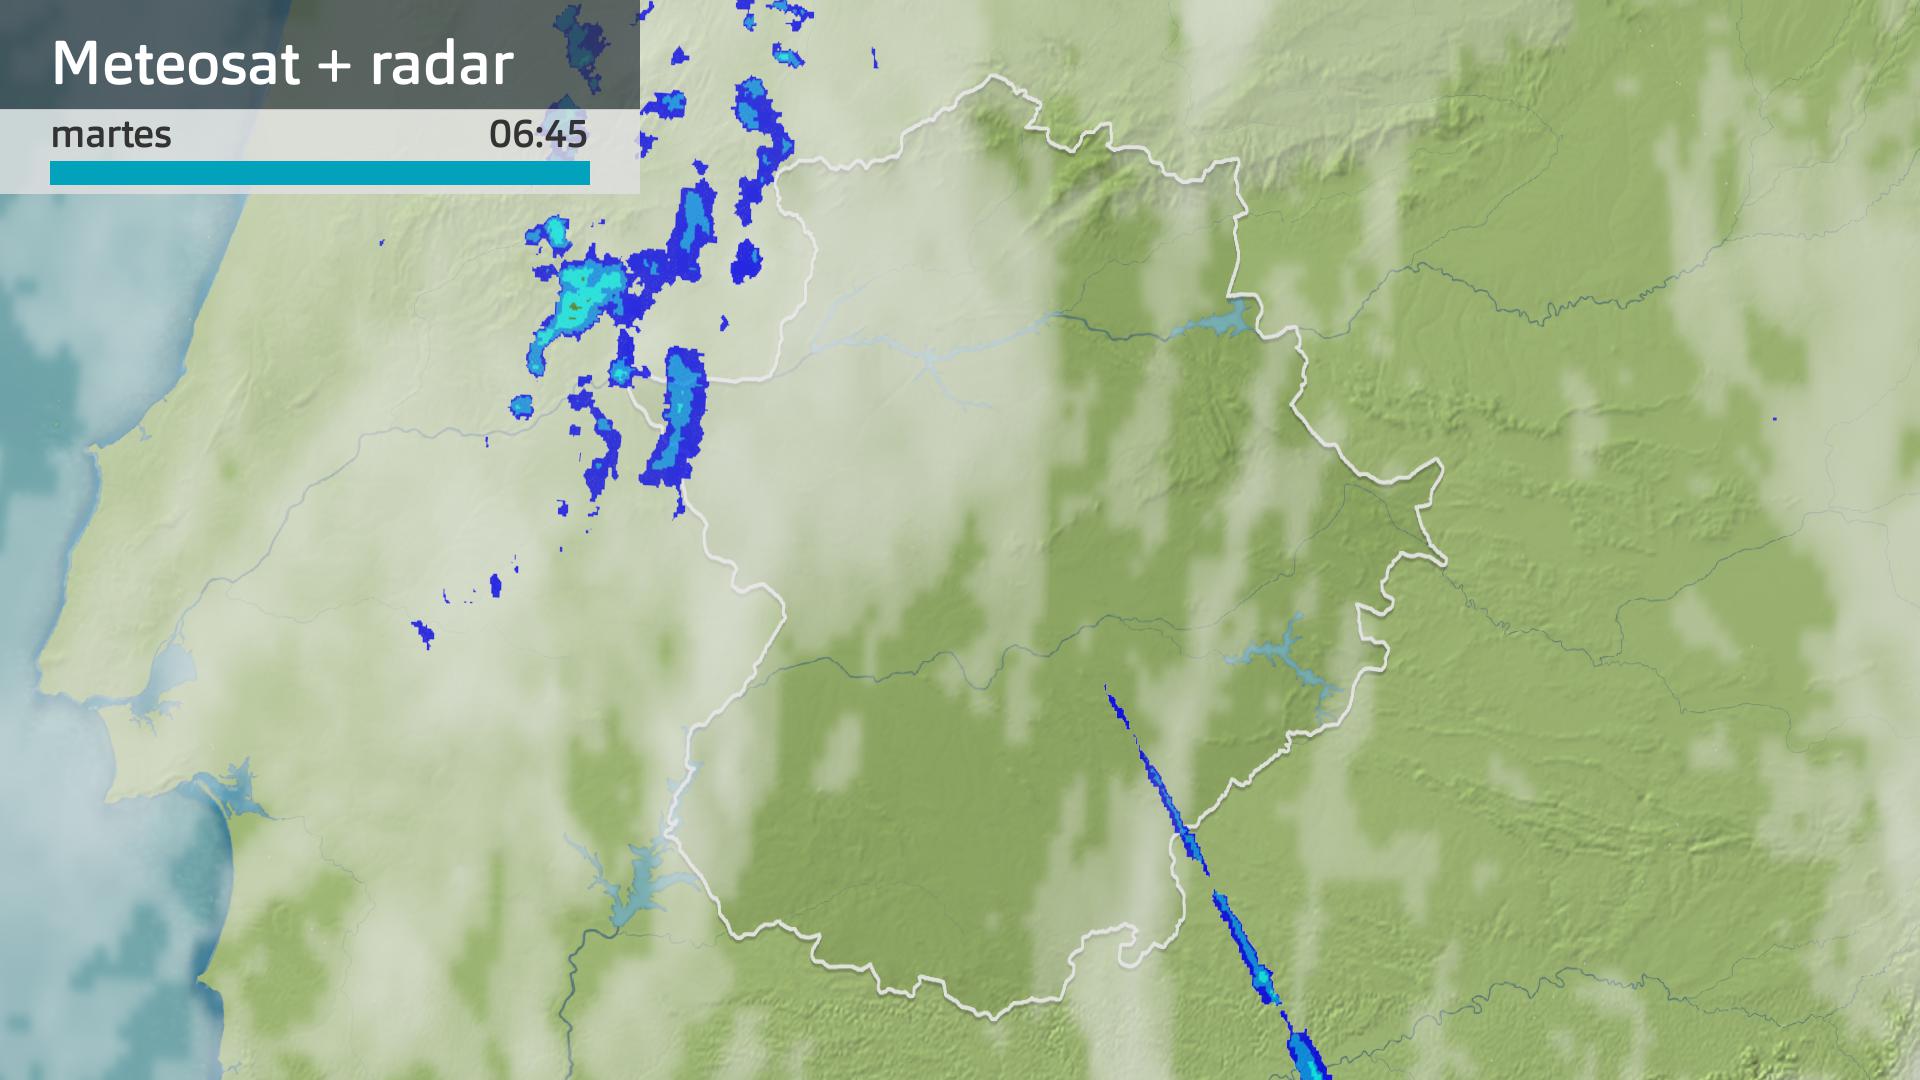 Imagen de Meteosat + radar meteorológico martes 30 de abril 6:45 h.